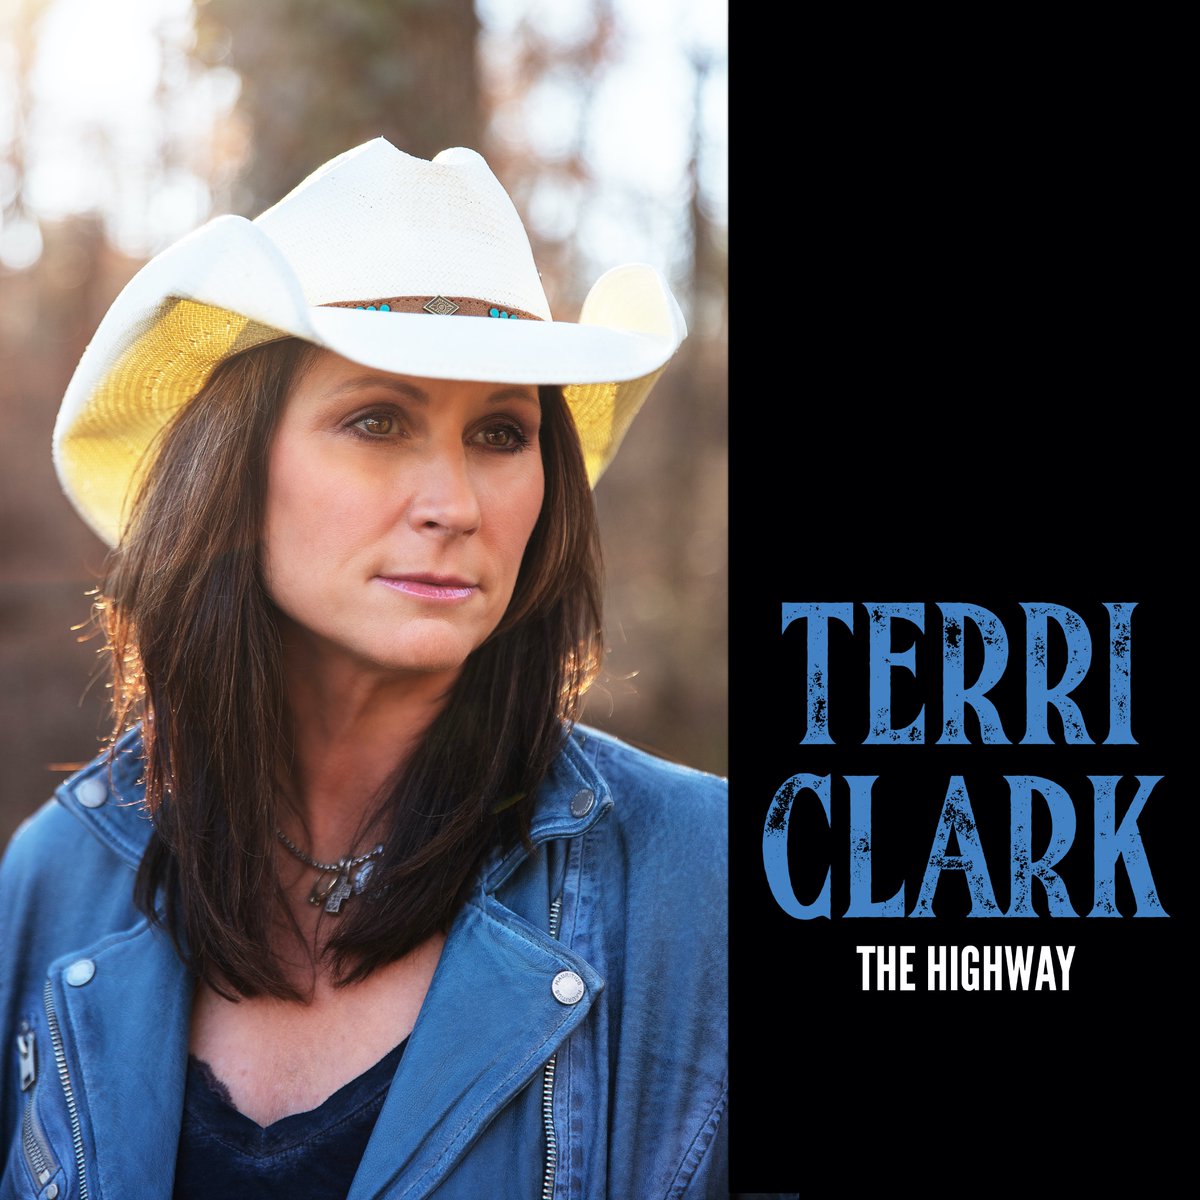 terri clark new song